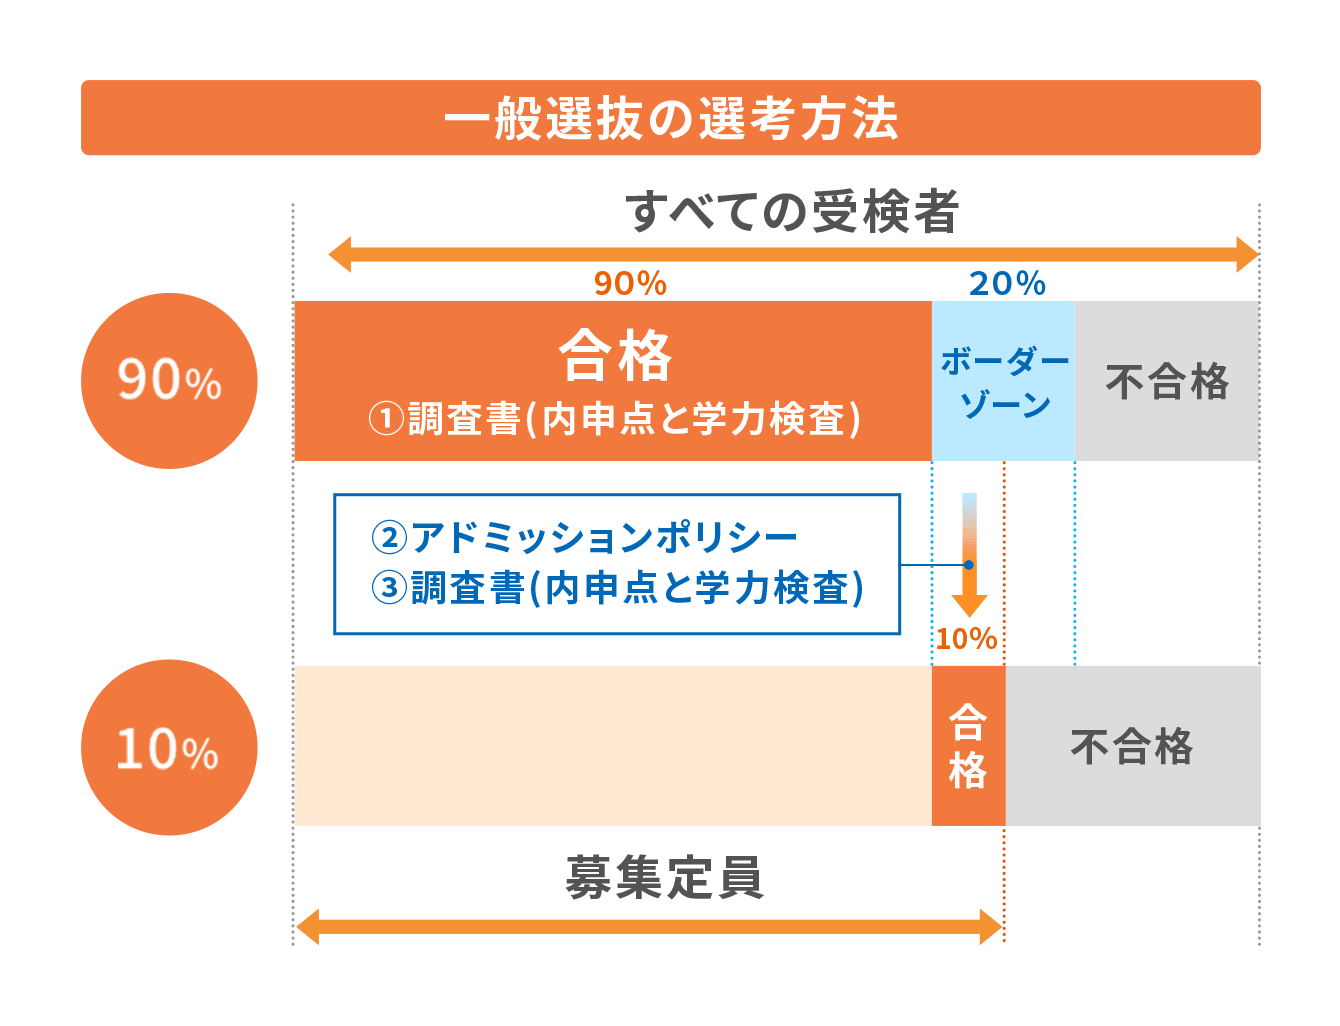 大阪府高校受験の一般選抜の選考方法